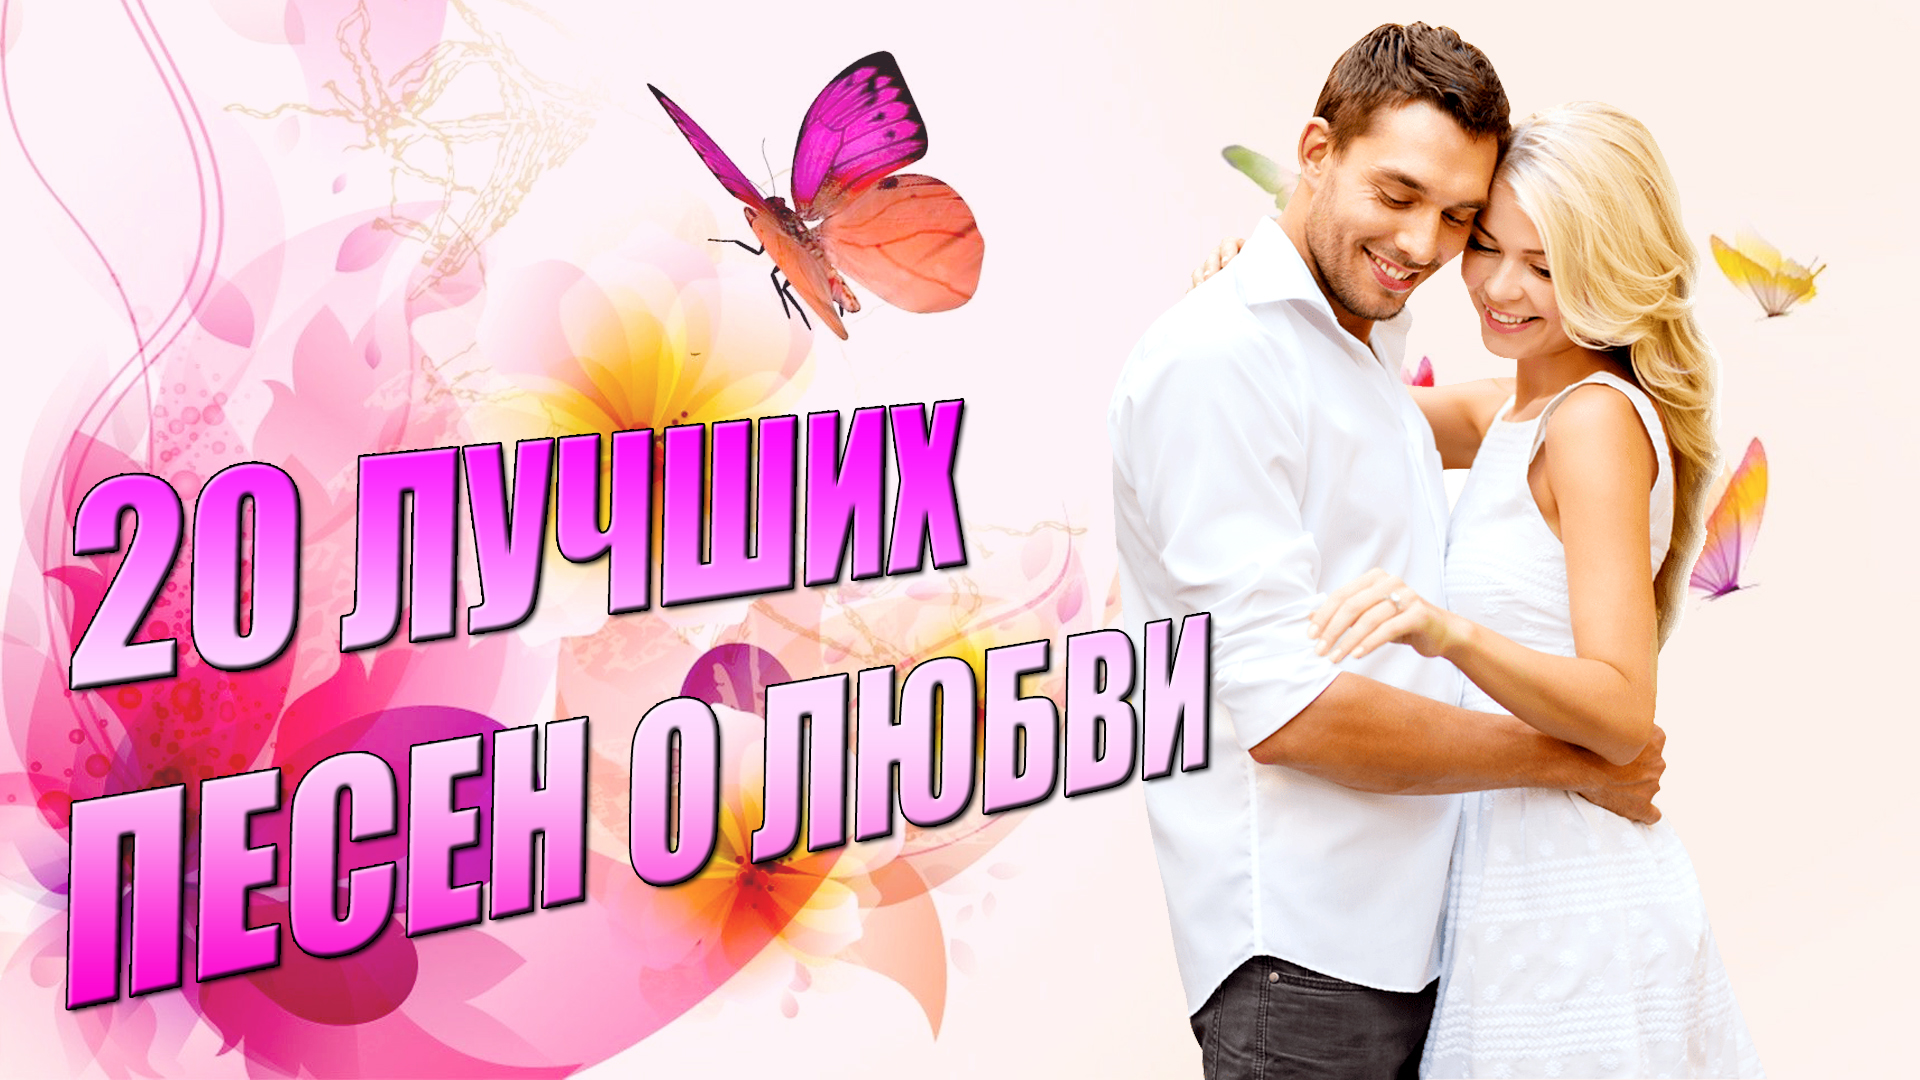 Слушать песни о любви красивые на русском